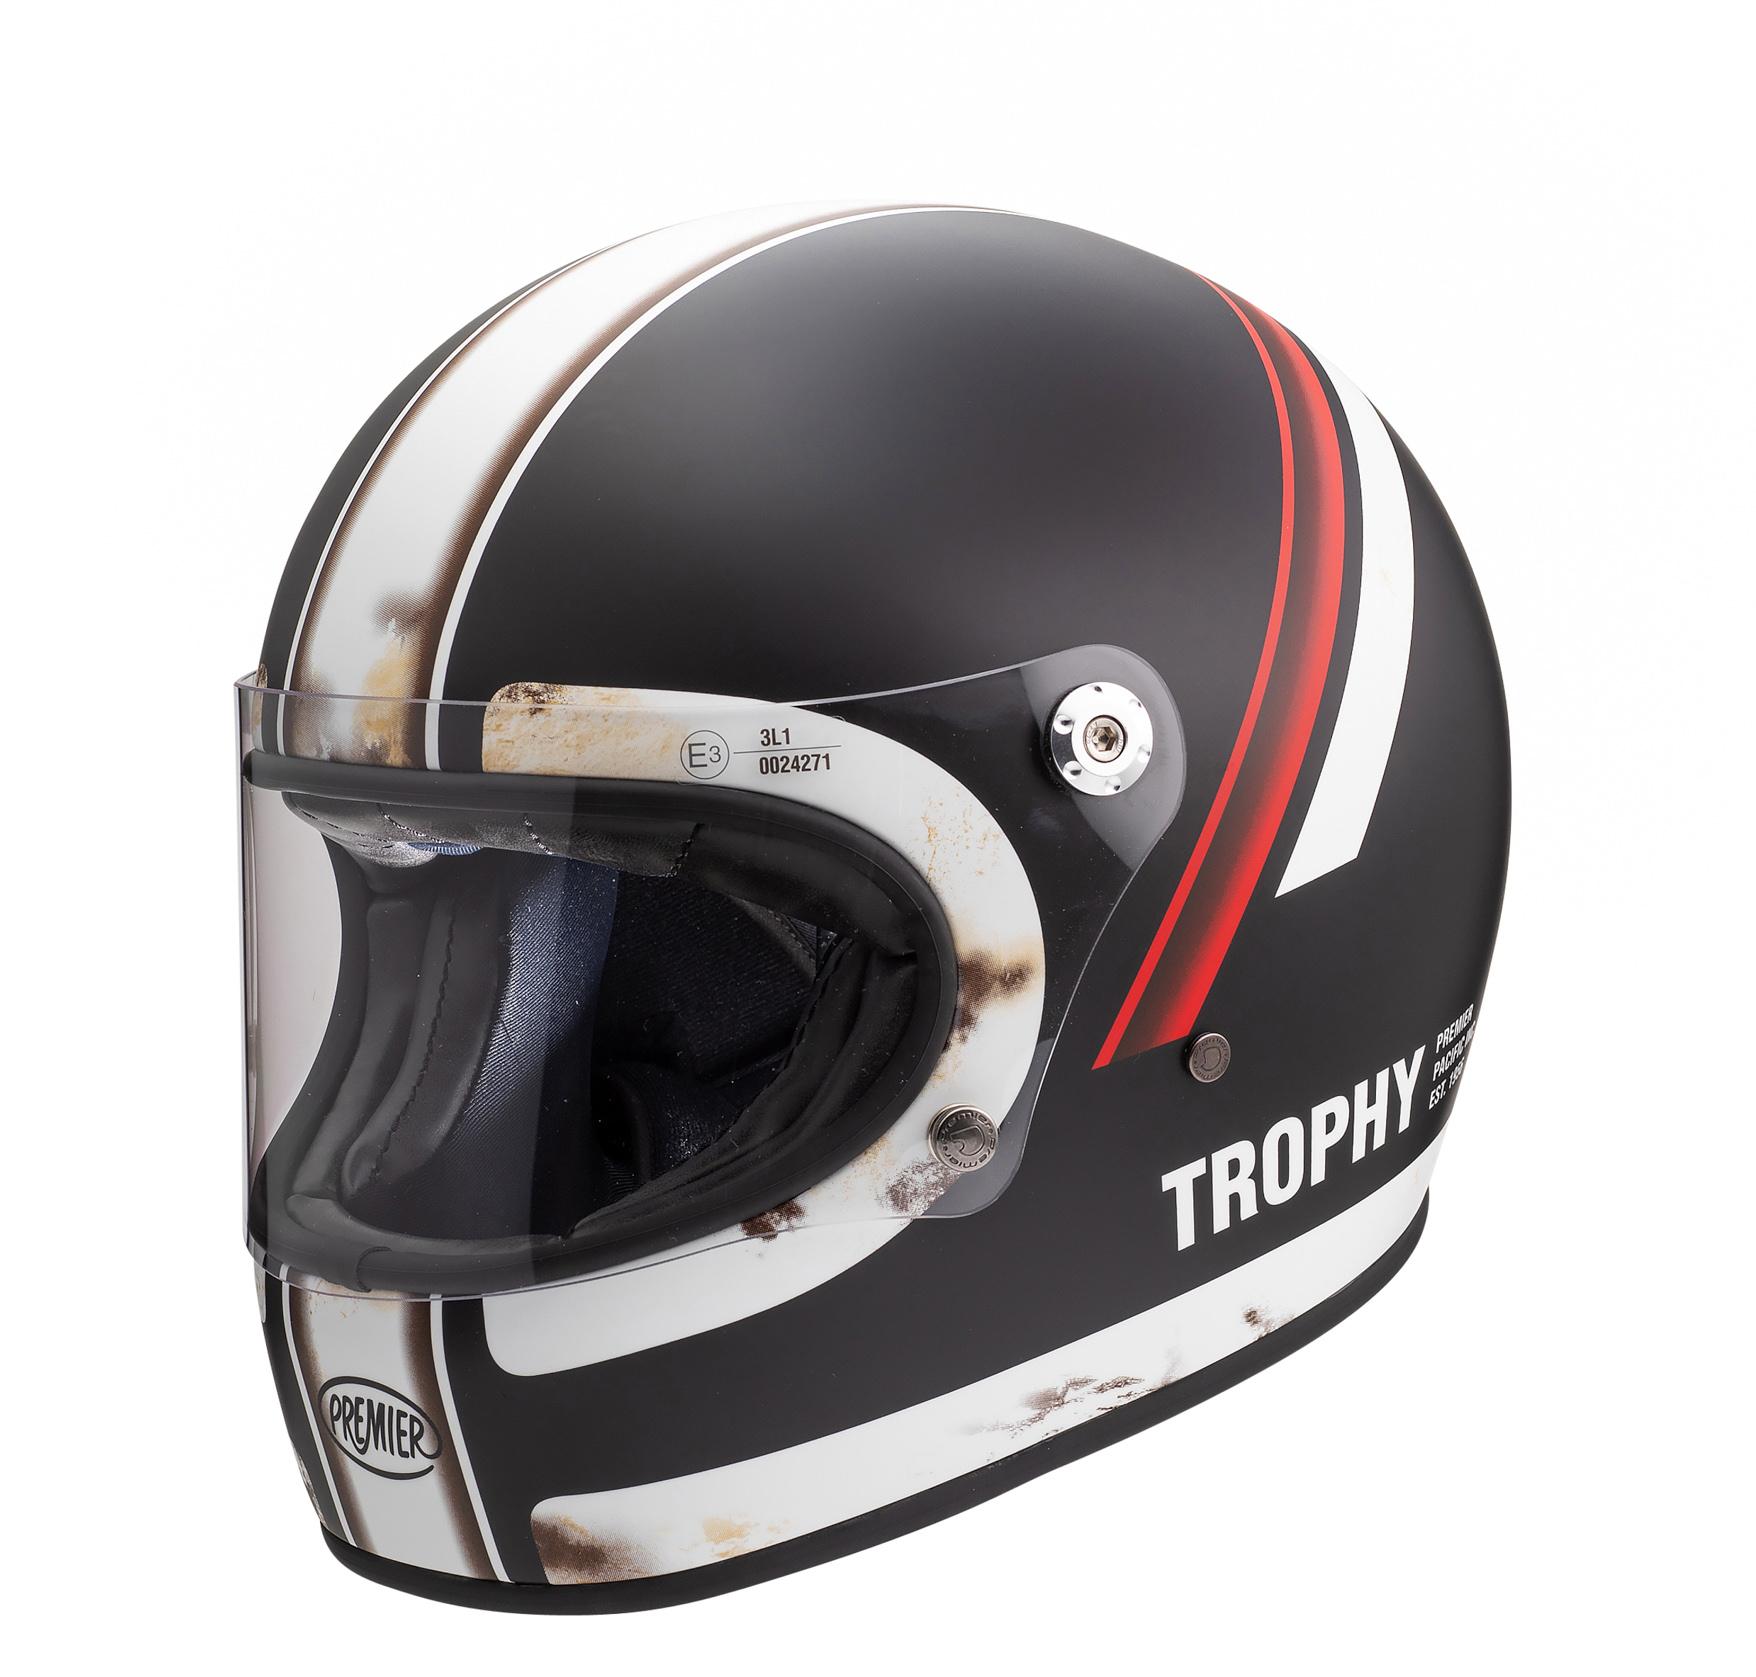 Premier Trophy Full Face Motorcycle Helmet Do - Black/White, L